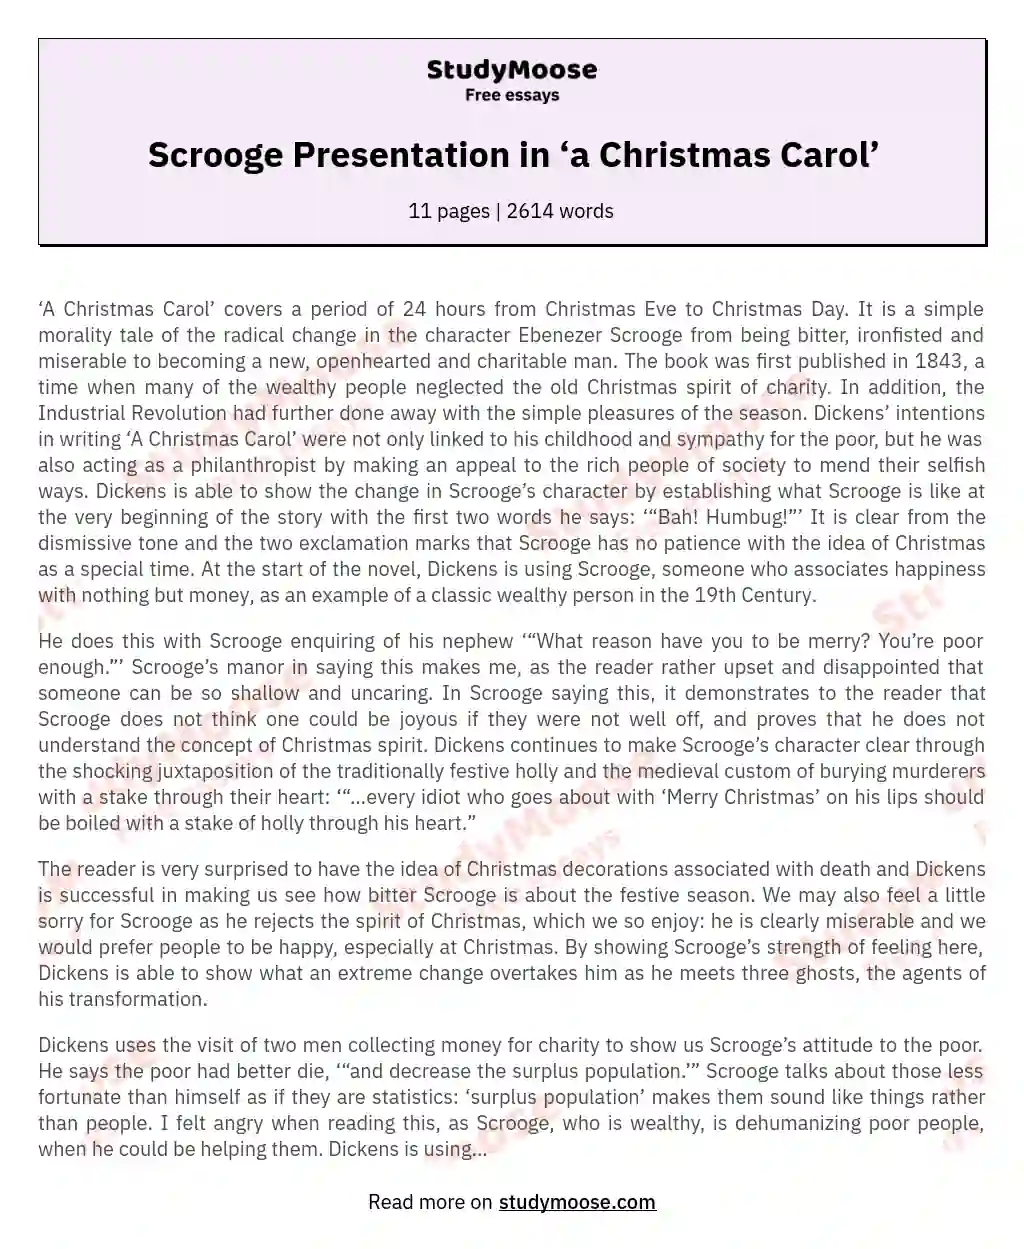 Scrooge Presentation in ‘a Christmas Carol’ essay